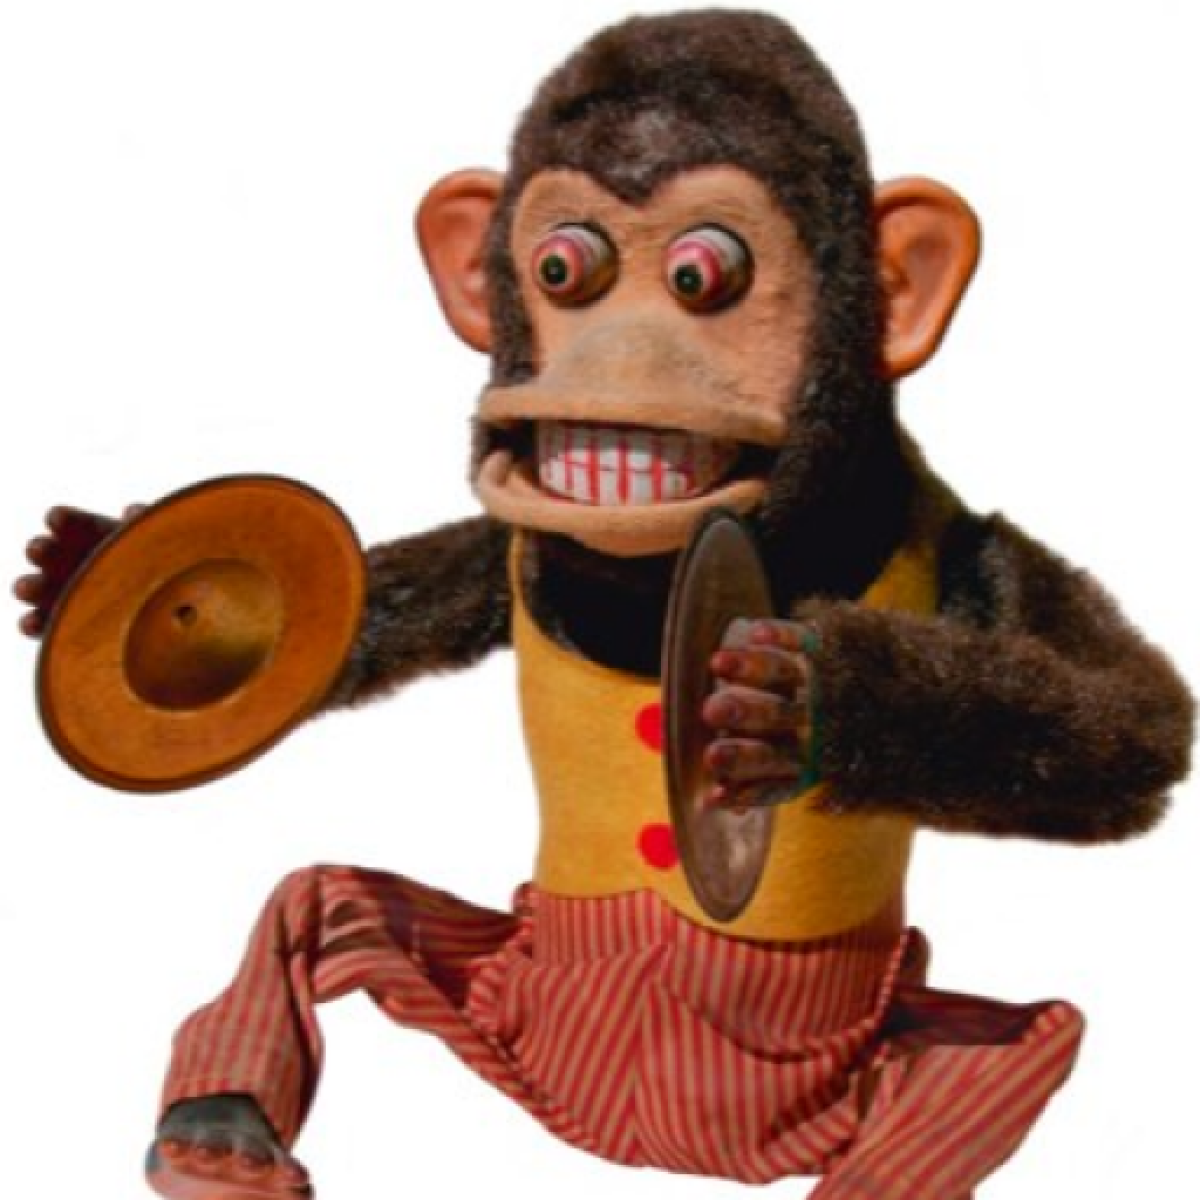 Игрушка обезьянка с тарелками. J,tpzyf c njhtkrfvb. Обезьяна с тарелками. Обезьяна с барабанами.